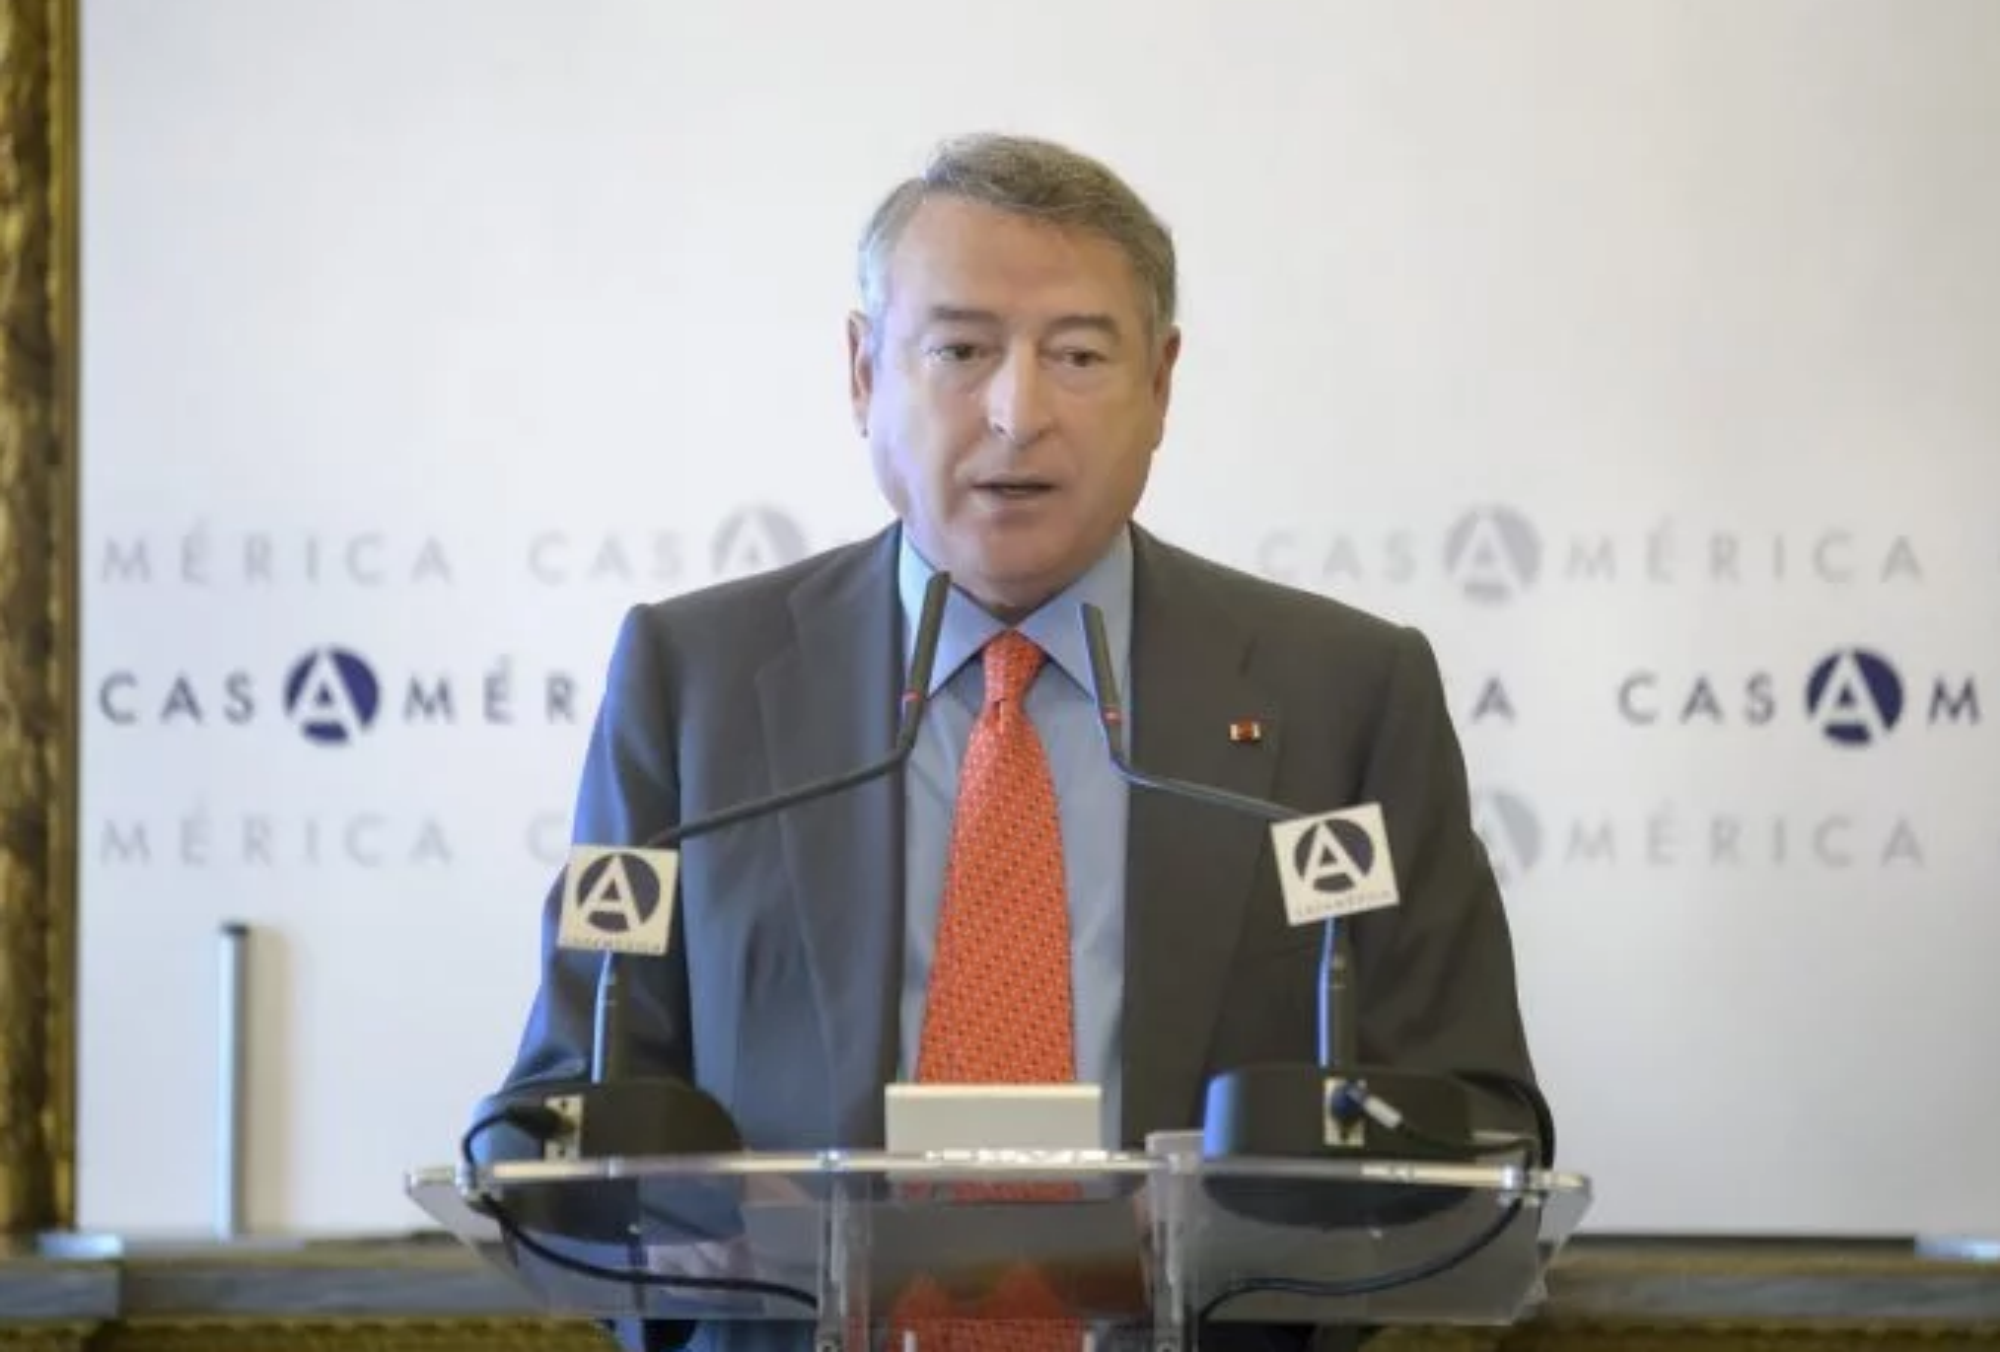 El presidente de RTVE, sobre América: "España no fue colonizadora, sino evangelizadora"